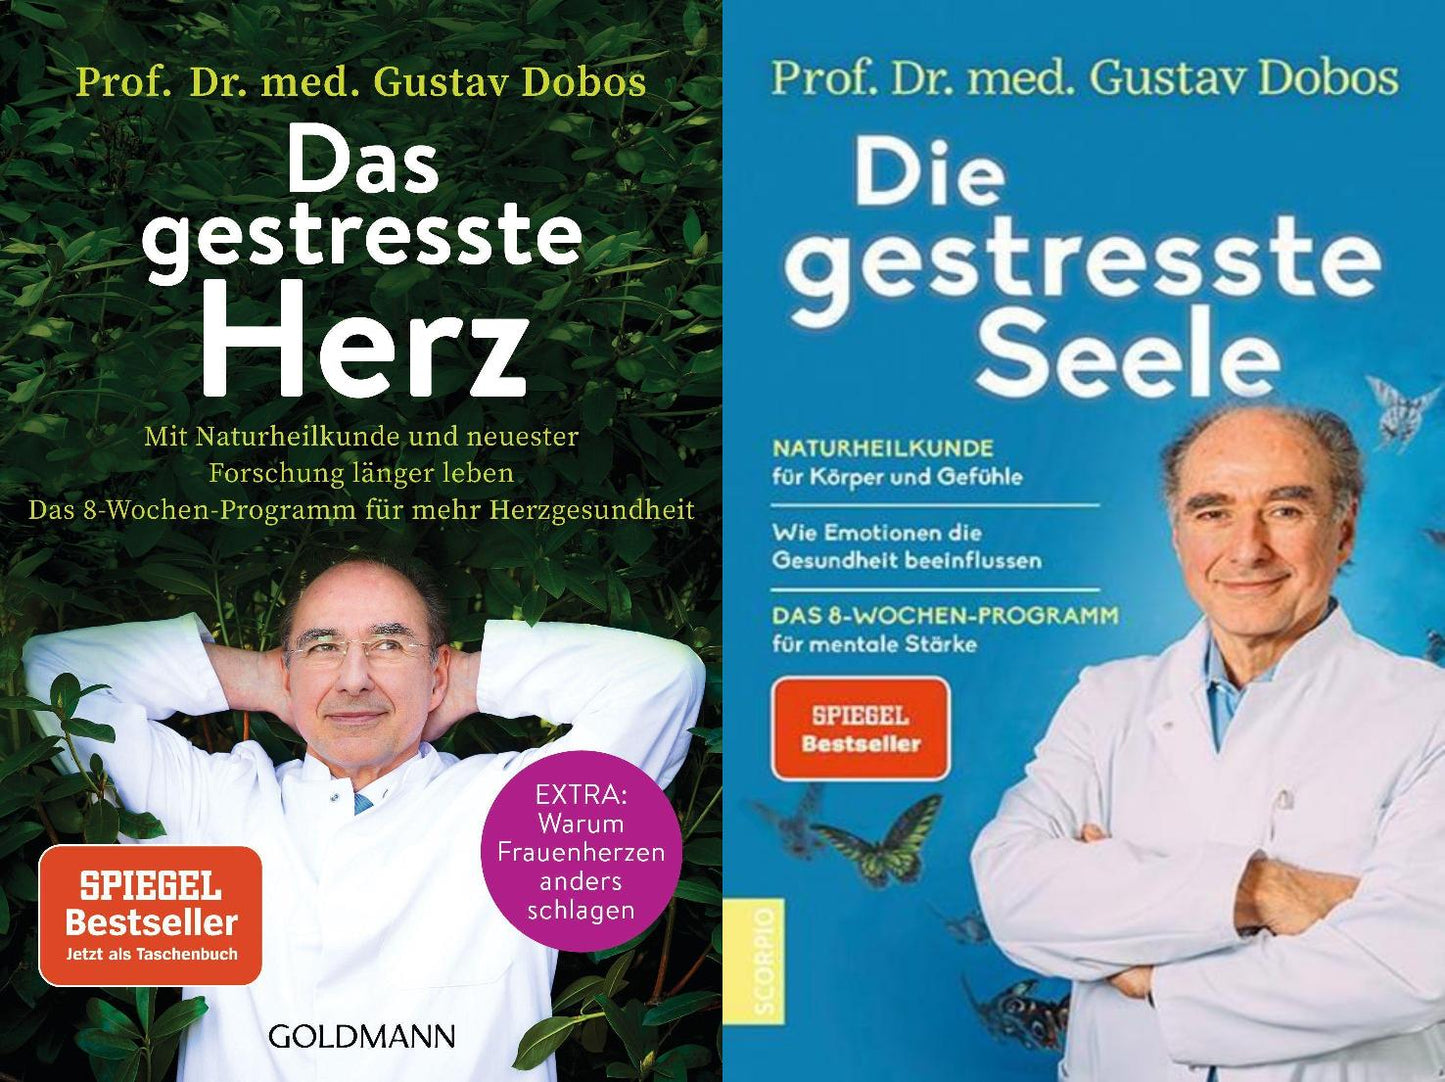 Das gestresste Herz + Die gestresste Seele von Prof.Dr.med. Gustav Dobos + 1 exklusives Postkartenset